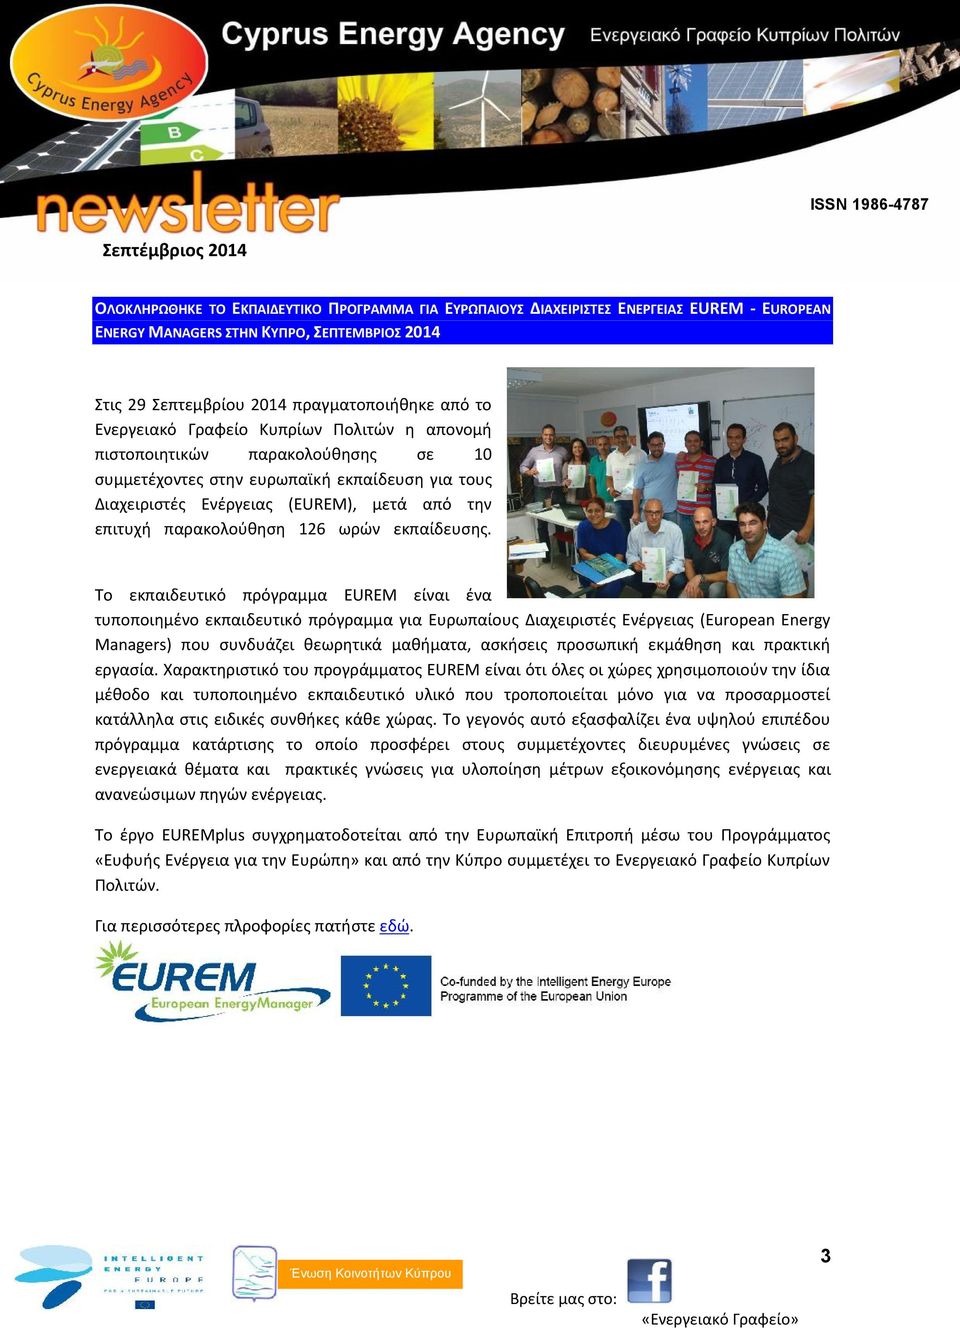 Το εκπαιδευτικό πρόγραμμα EUREM είναι ένα τυποποιημένο εκπαιδευτικό πρόγραμμα για Ευρωπαίους Διαχειριστές Ενέργειας (European Energy Managers) που συνδυάζει θεωρητικά μαθήματα, ασκήσεις προσωπική